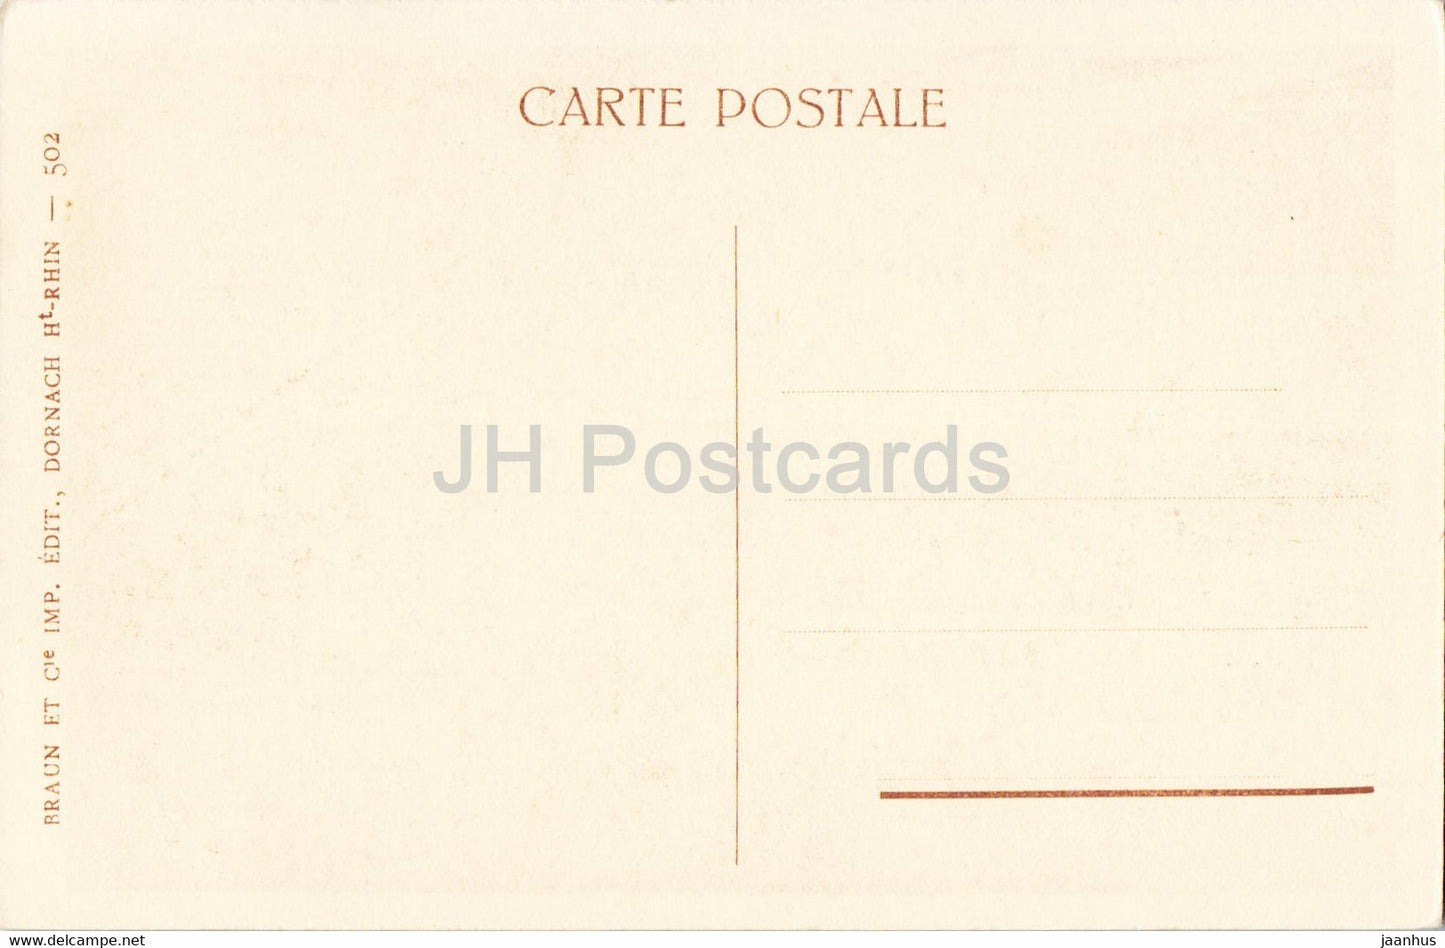 Riquewihr - Le Dolder - old postcard - France - unused